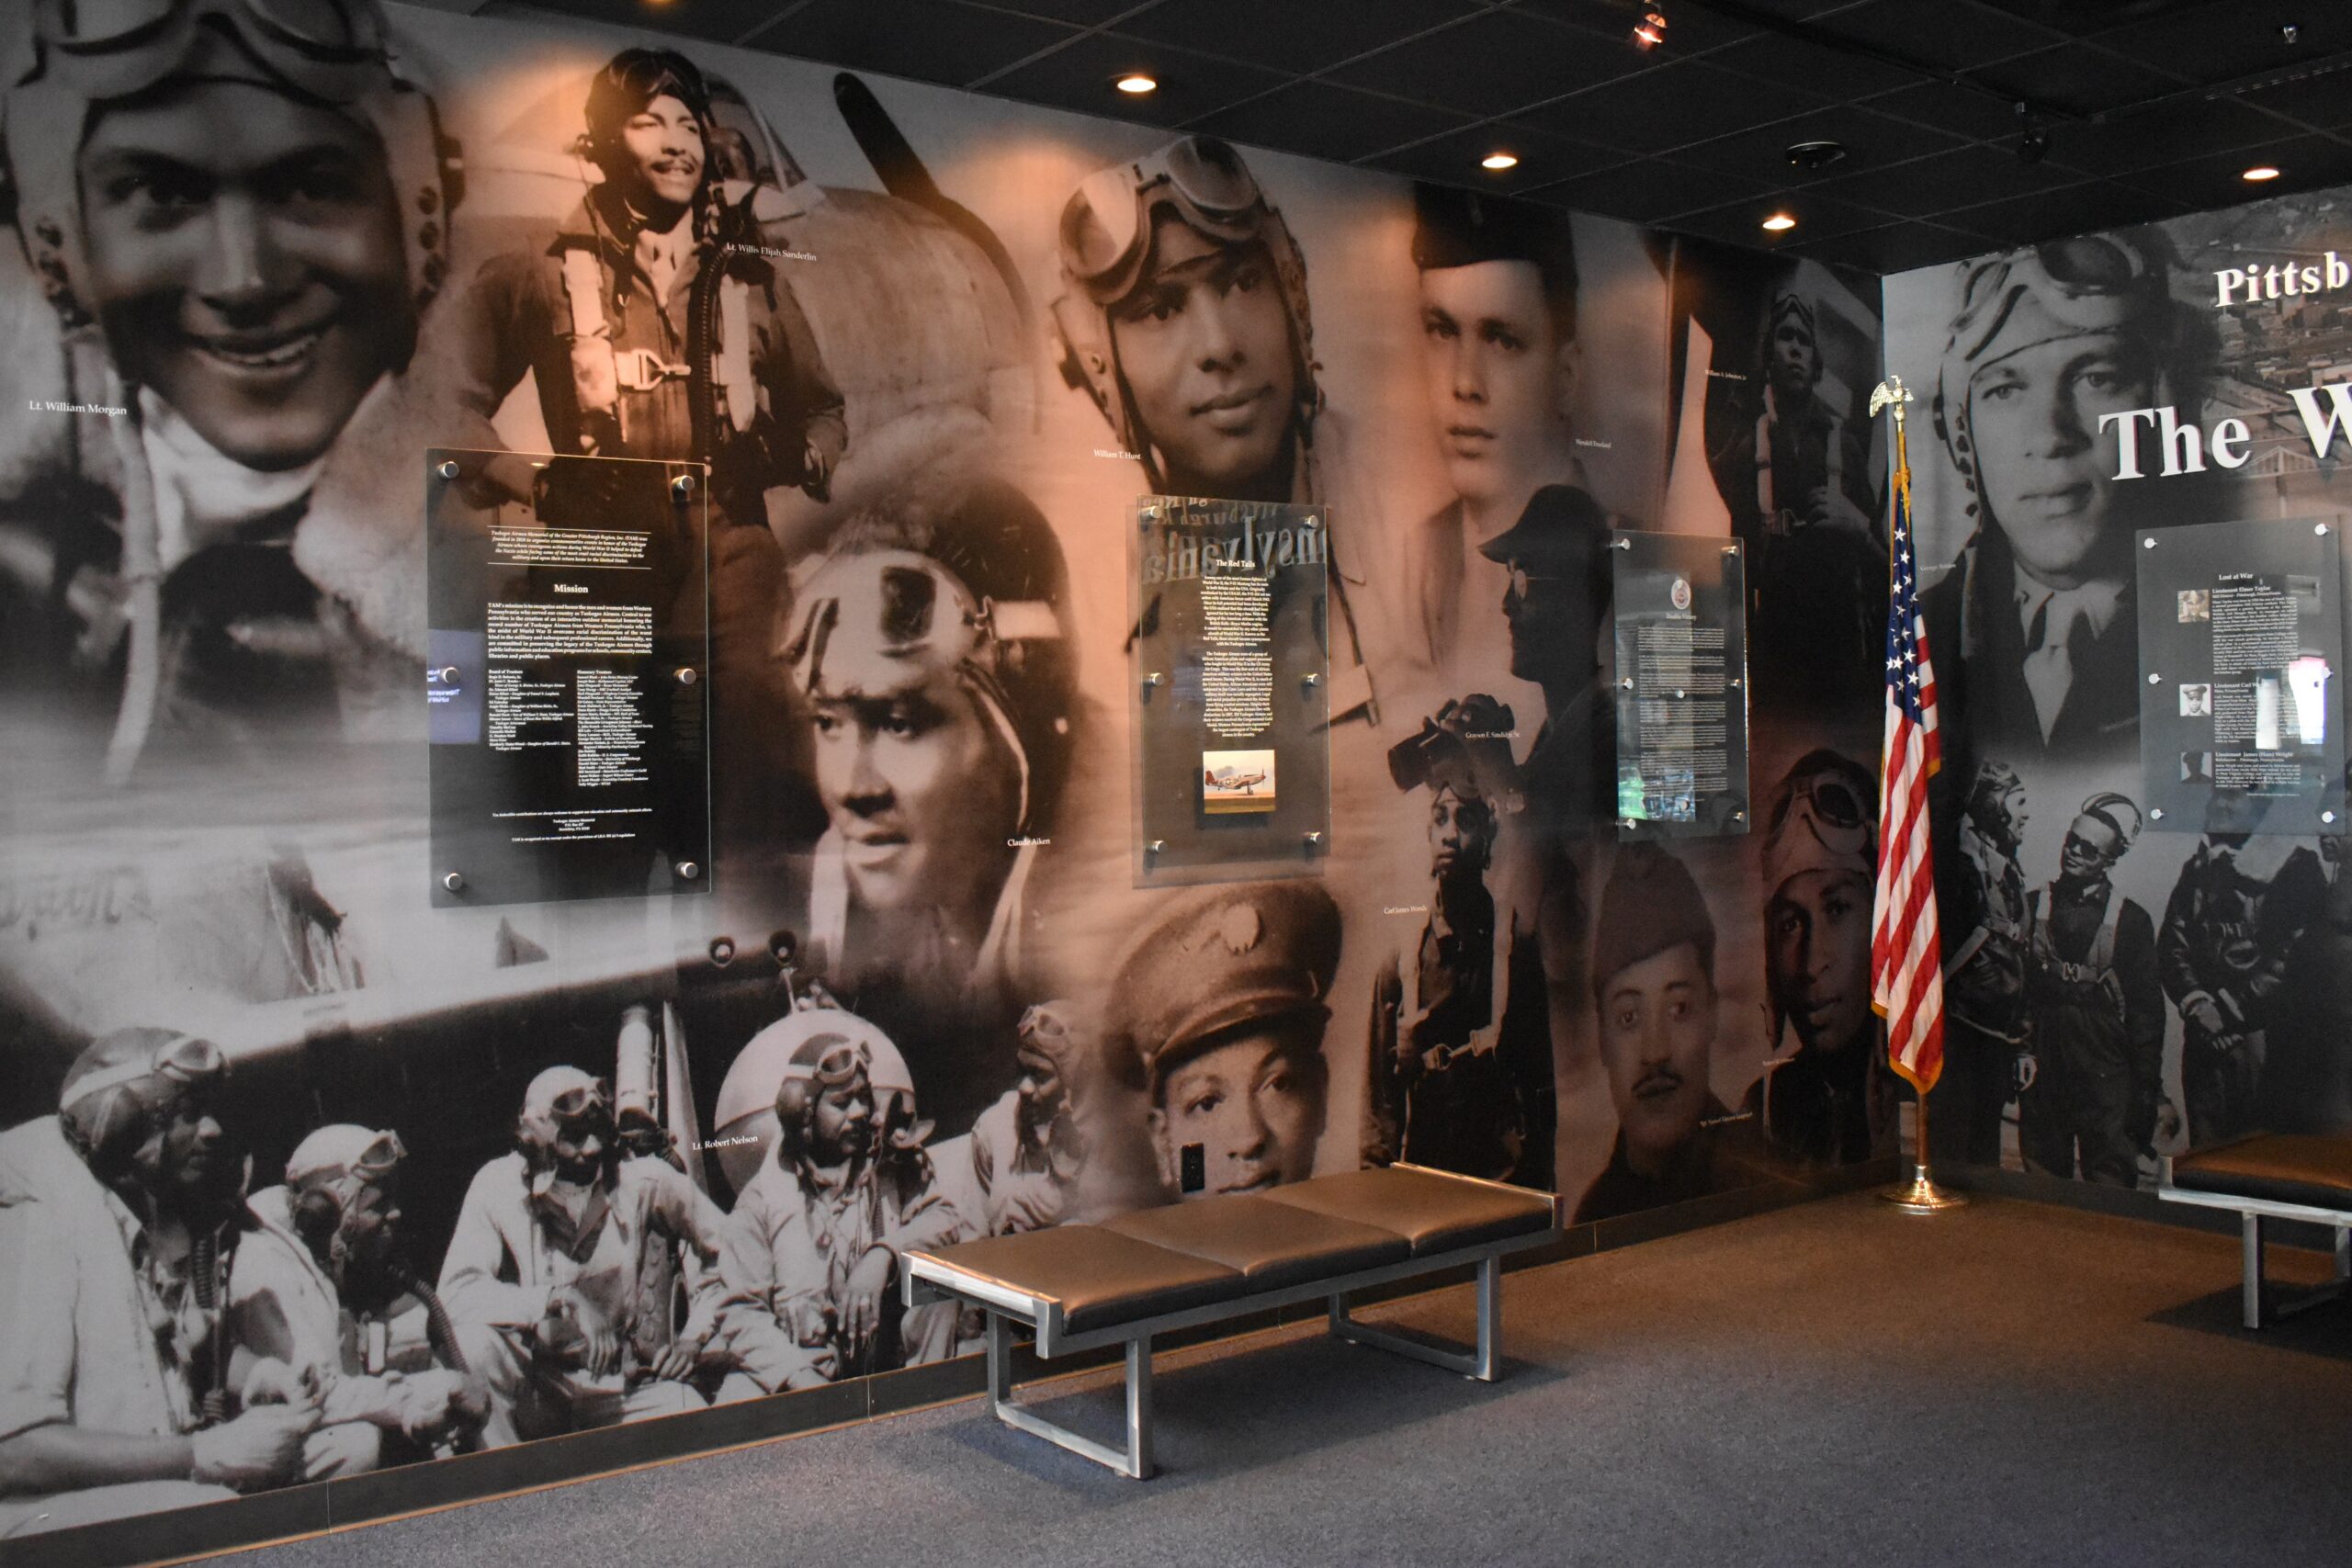 Tuskegee Airmen Memorial